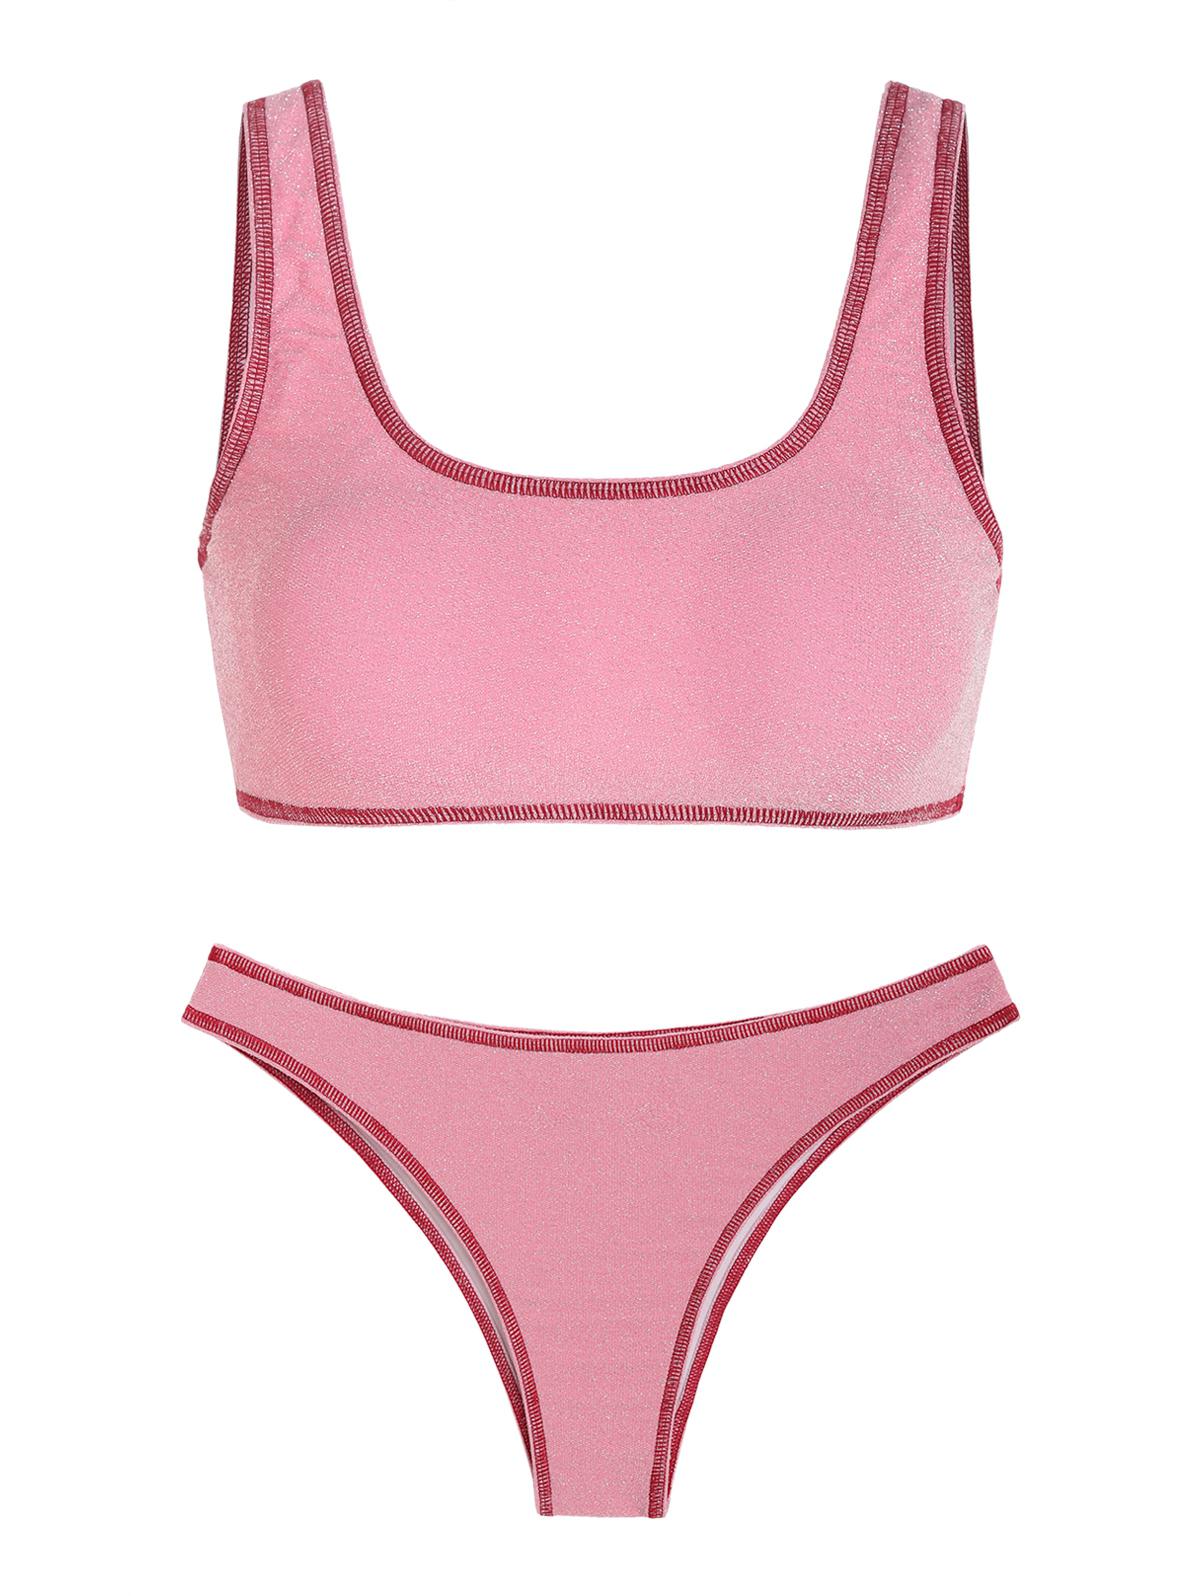 ZAFUL Contrast Stitching Sporty Metallic Glitter Sparkle Tank-style Bikini Swimwear Light pink